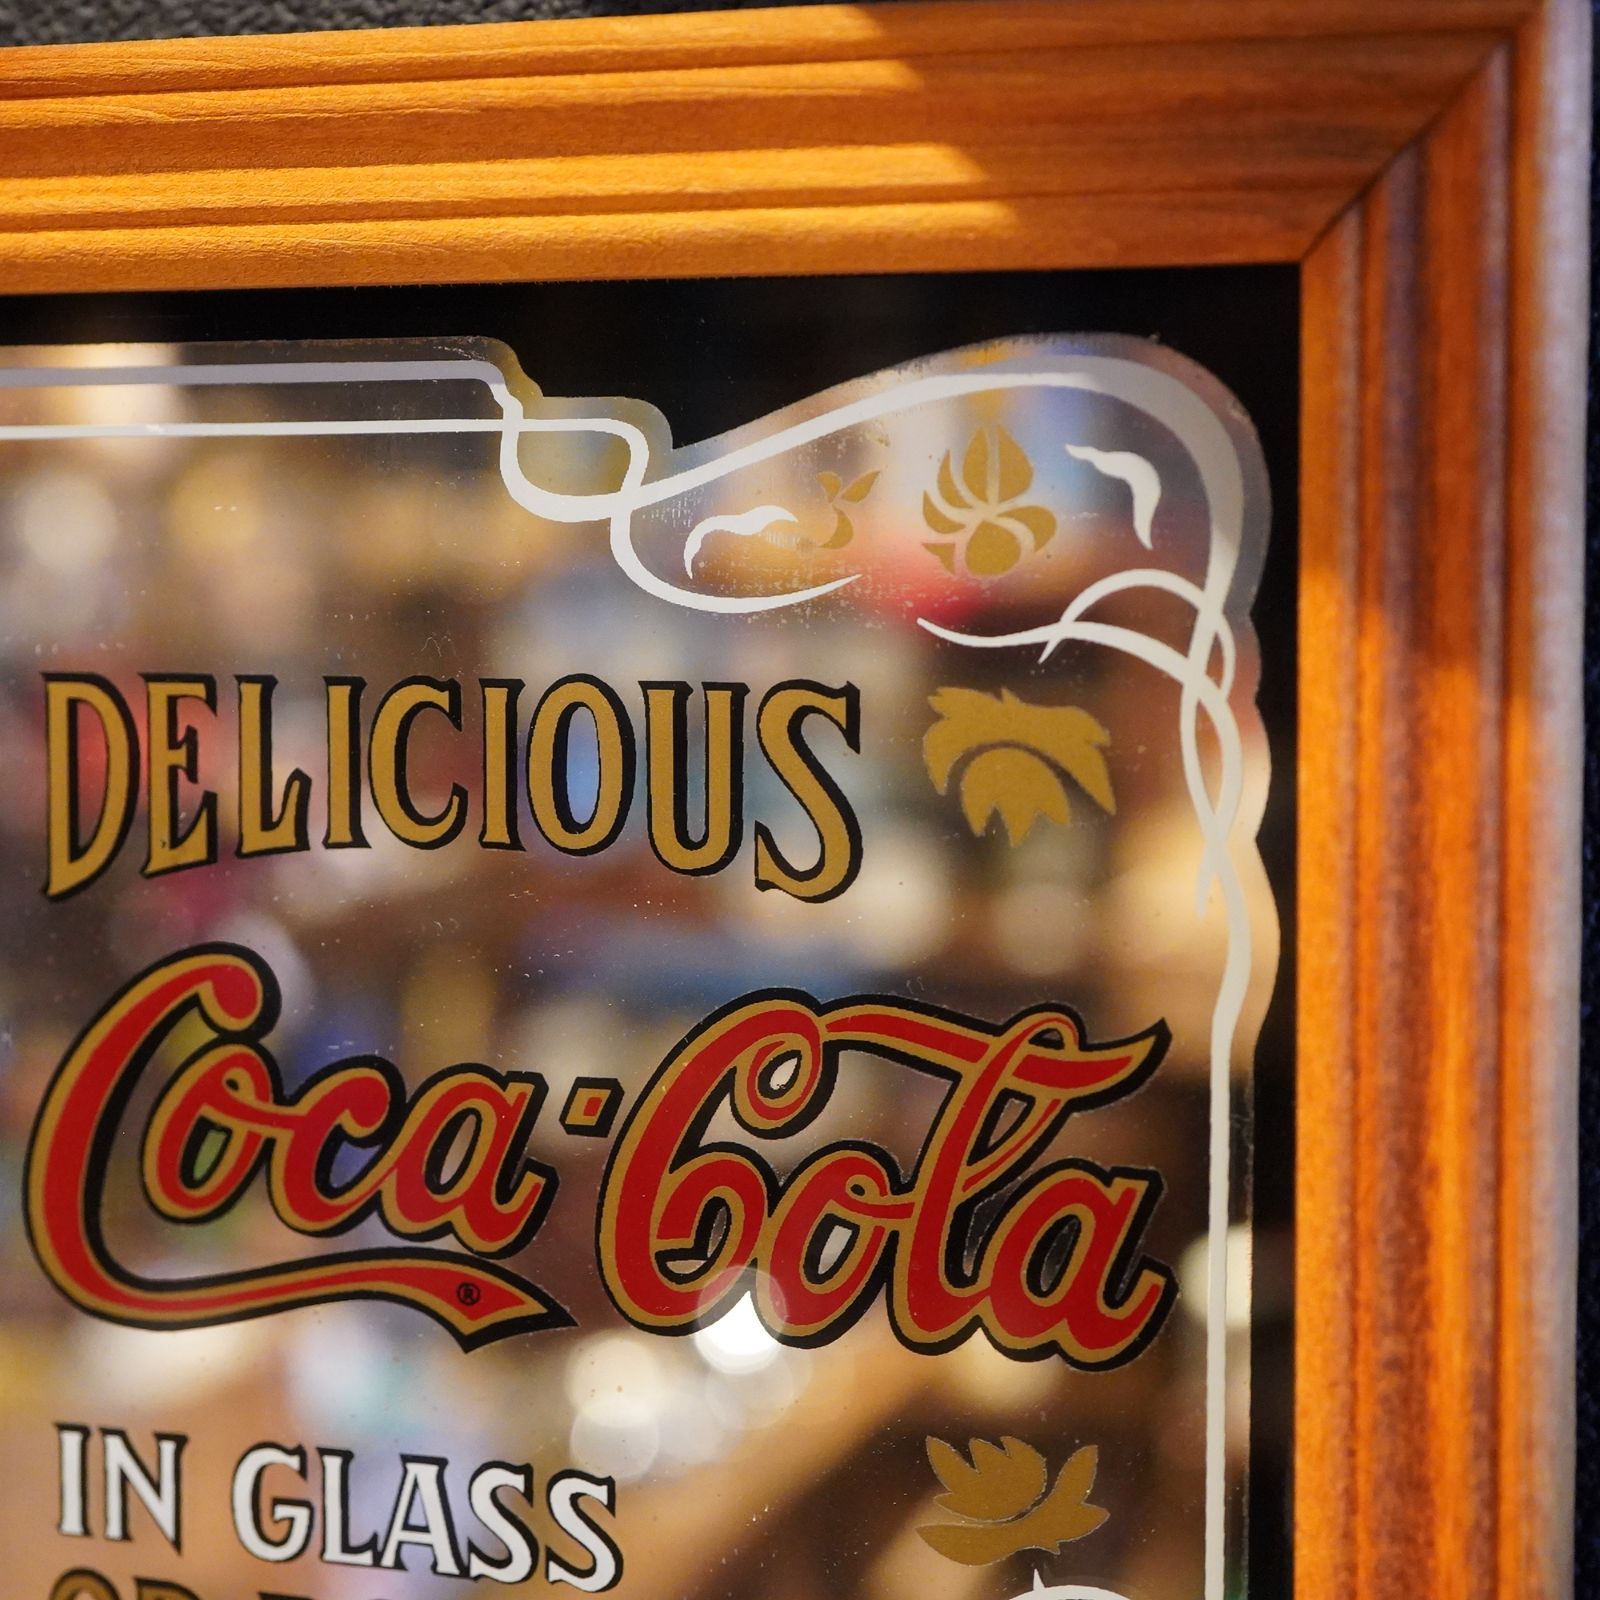 Coca-Cola パブミラー アメリカンヴィンテージ ビンテージ ガレージ 